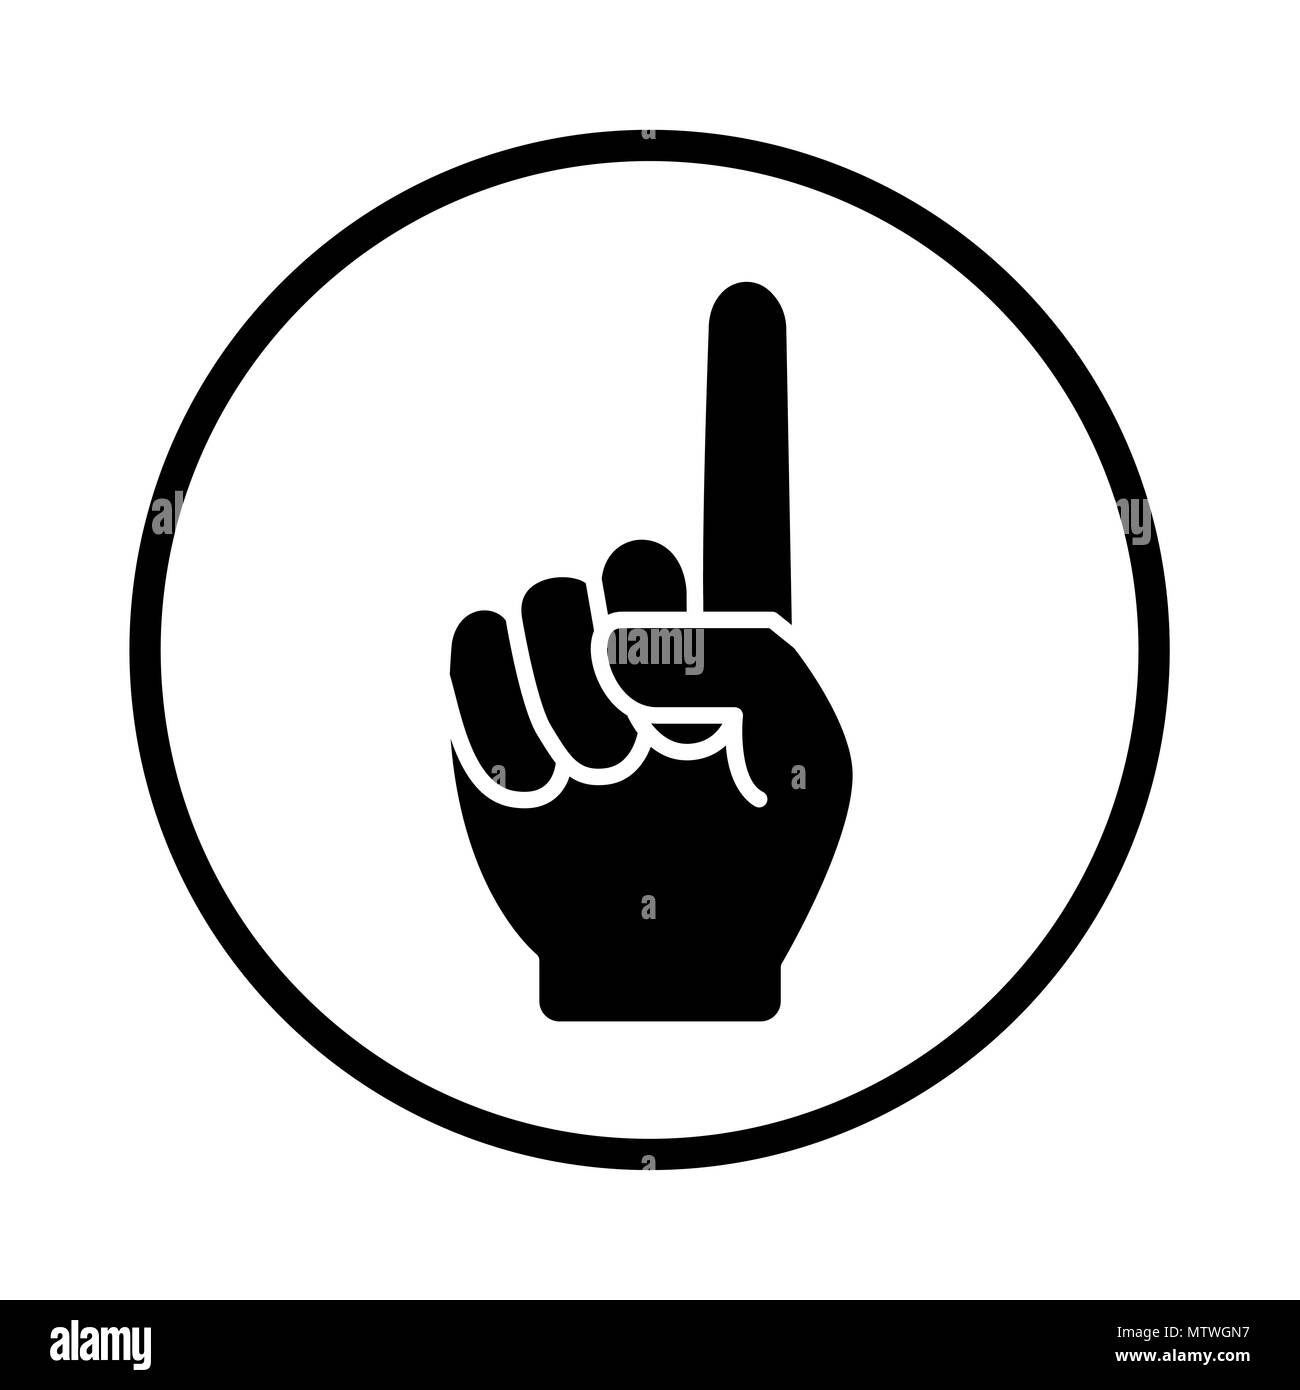 Un doigt dans l'icône de l'art de la ligne Circle, montrant la main, symbole numéro un geste de la main avec un index - Vector design iconique Illustration de Vecteur